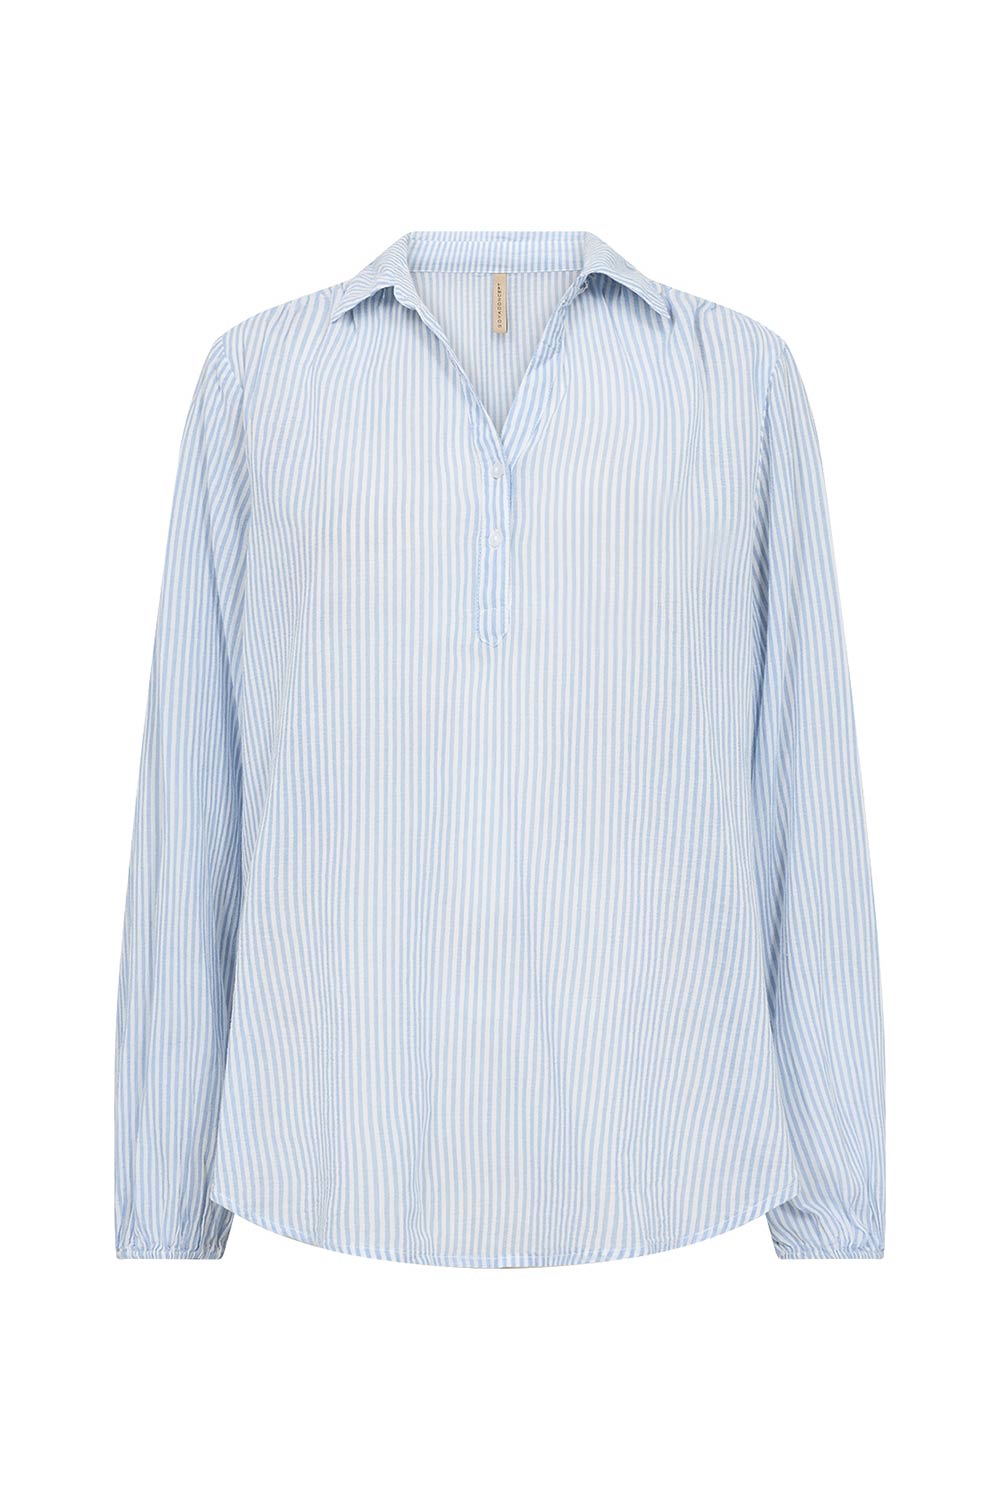 Soya Concept (40523) Women's Long Puff Sleeve Split V Shirt in Light Blue & White Vertical Stripe Print